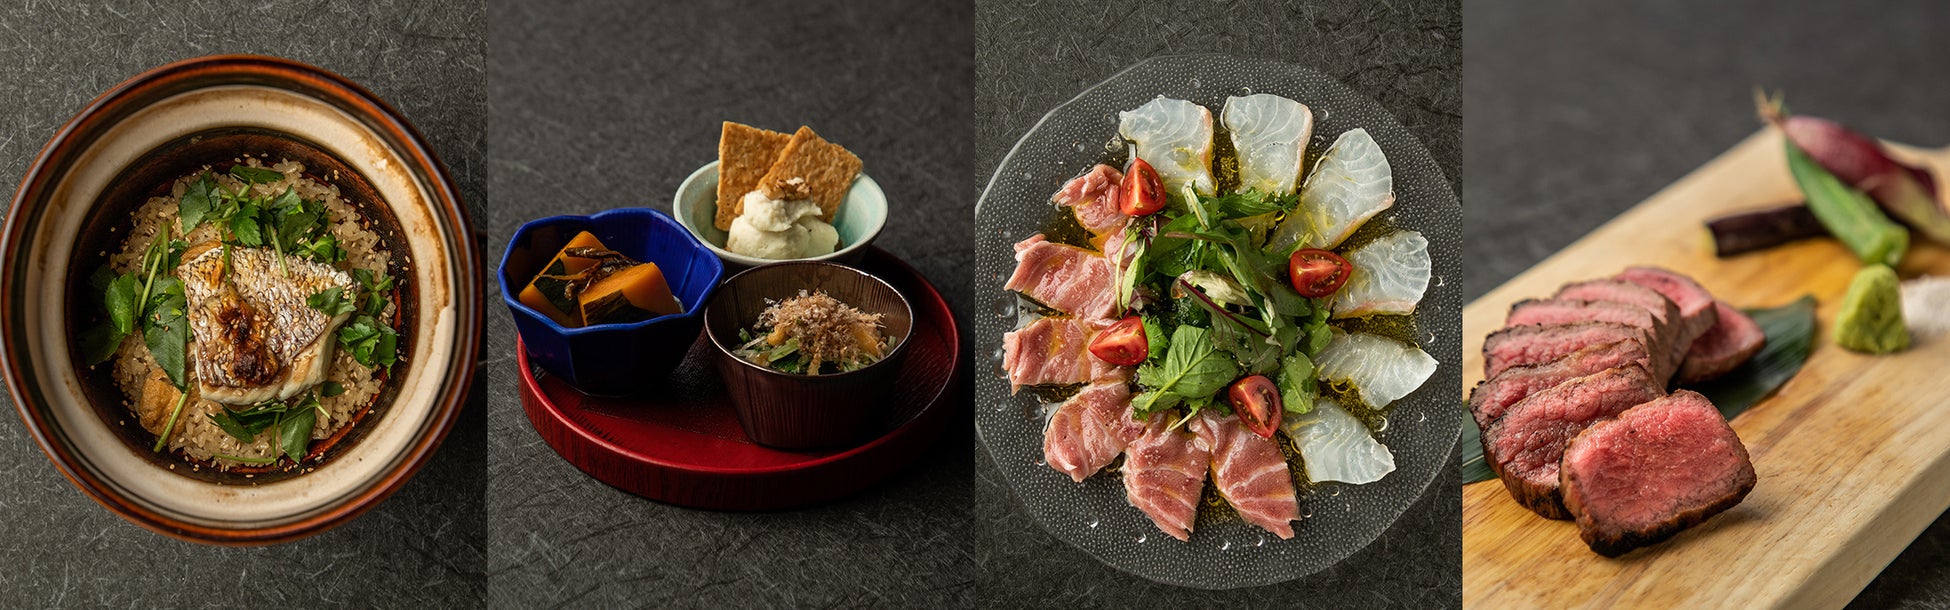 恵比寿の隠れ家で味わえる❝プロが作るおうちごはん❞―日本の食材に敬意と愛情を注ぐ人々の想いが一品一品に宿る「小割烹おはし ゑびすりびんぐ」グランドメニューリニューアル